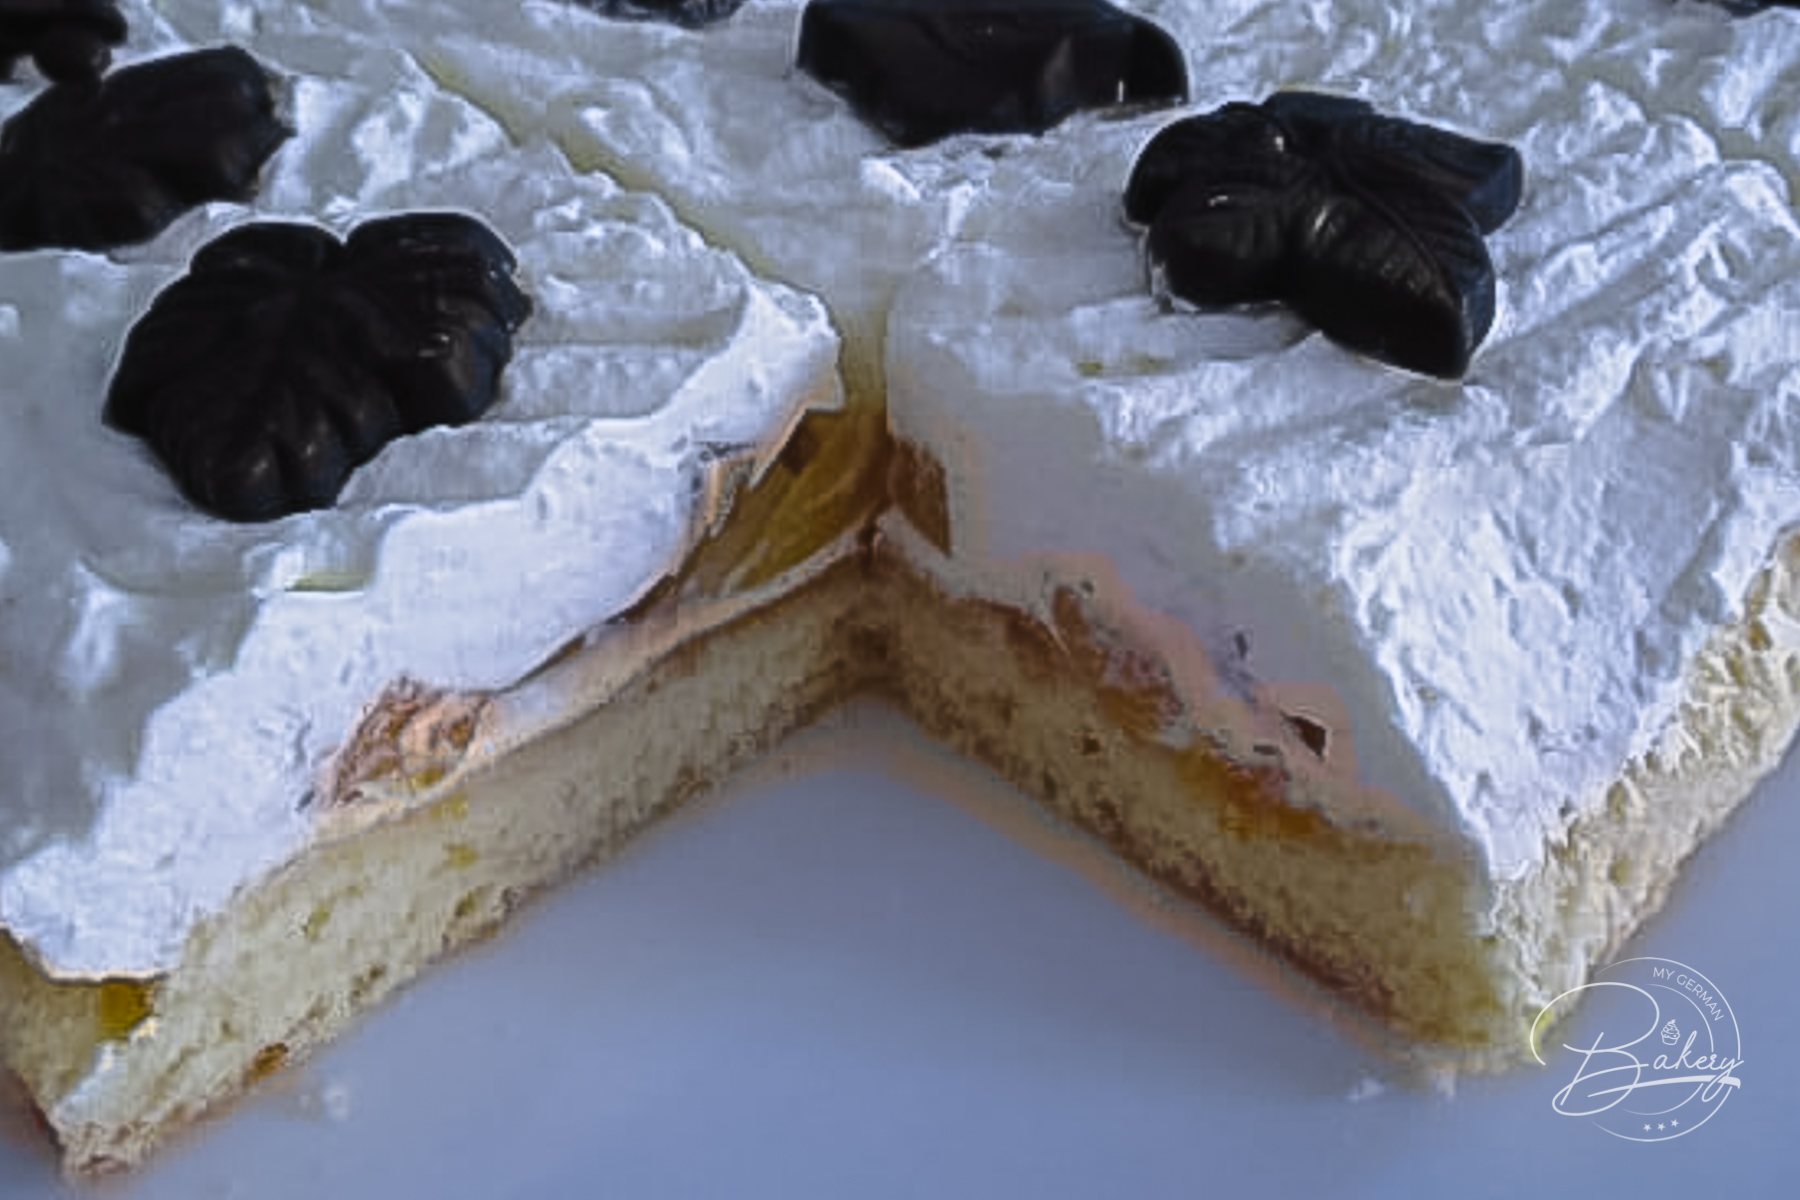 Easy sponge cake recipe - easy cream cake recipe with peaches - cream sponge cake with peaches as a light summer cake - Easy recipe sponge cake - step by step instructions for sponge cake base.